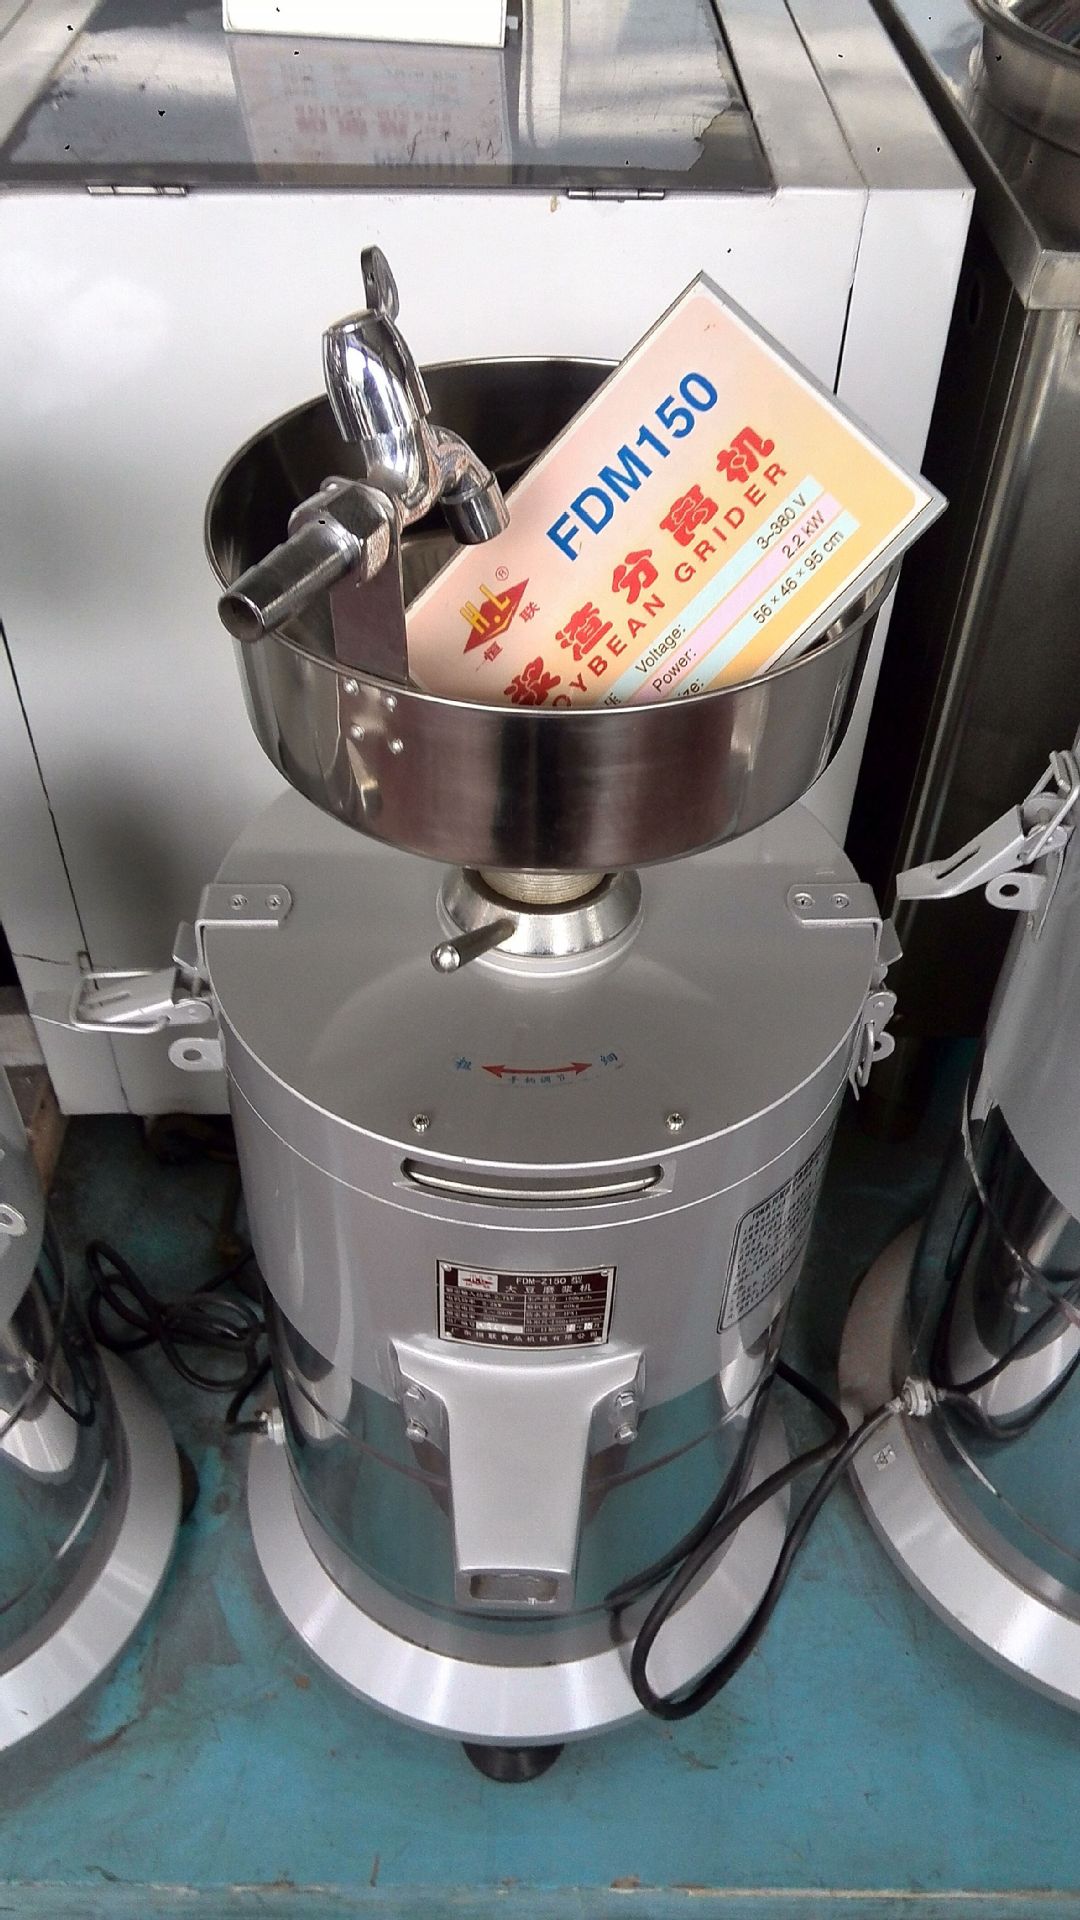 渣浆自动分离磨浆机/浆渣分离式磨浆机豆奶机豆浆机浆渣分离机 产品